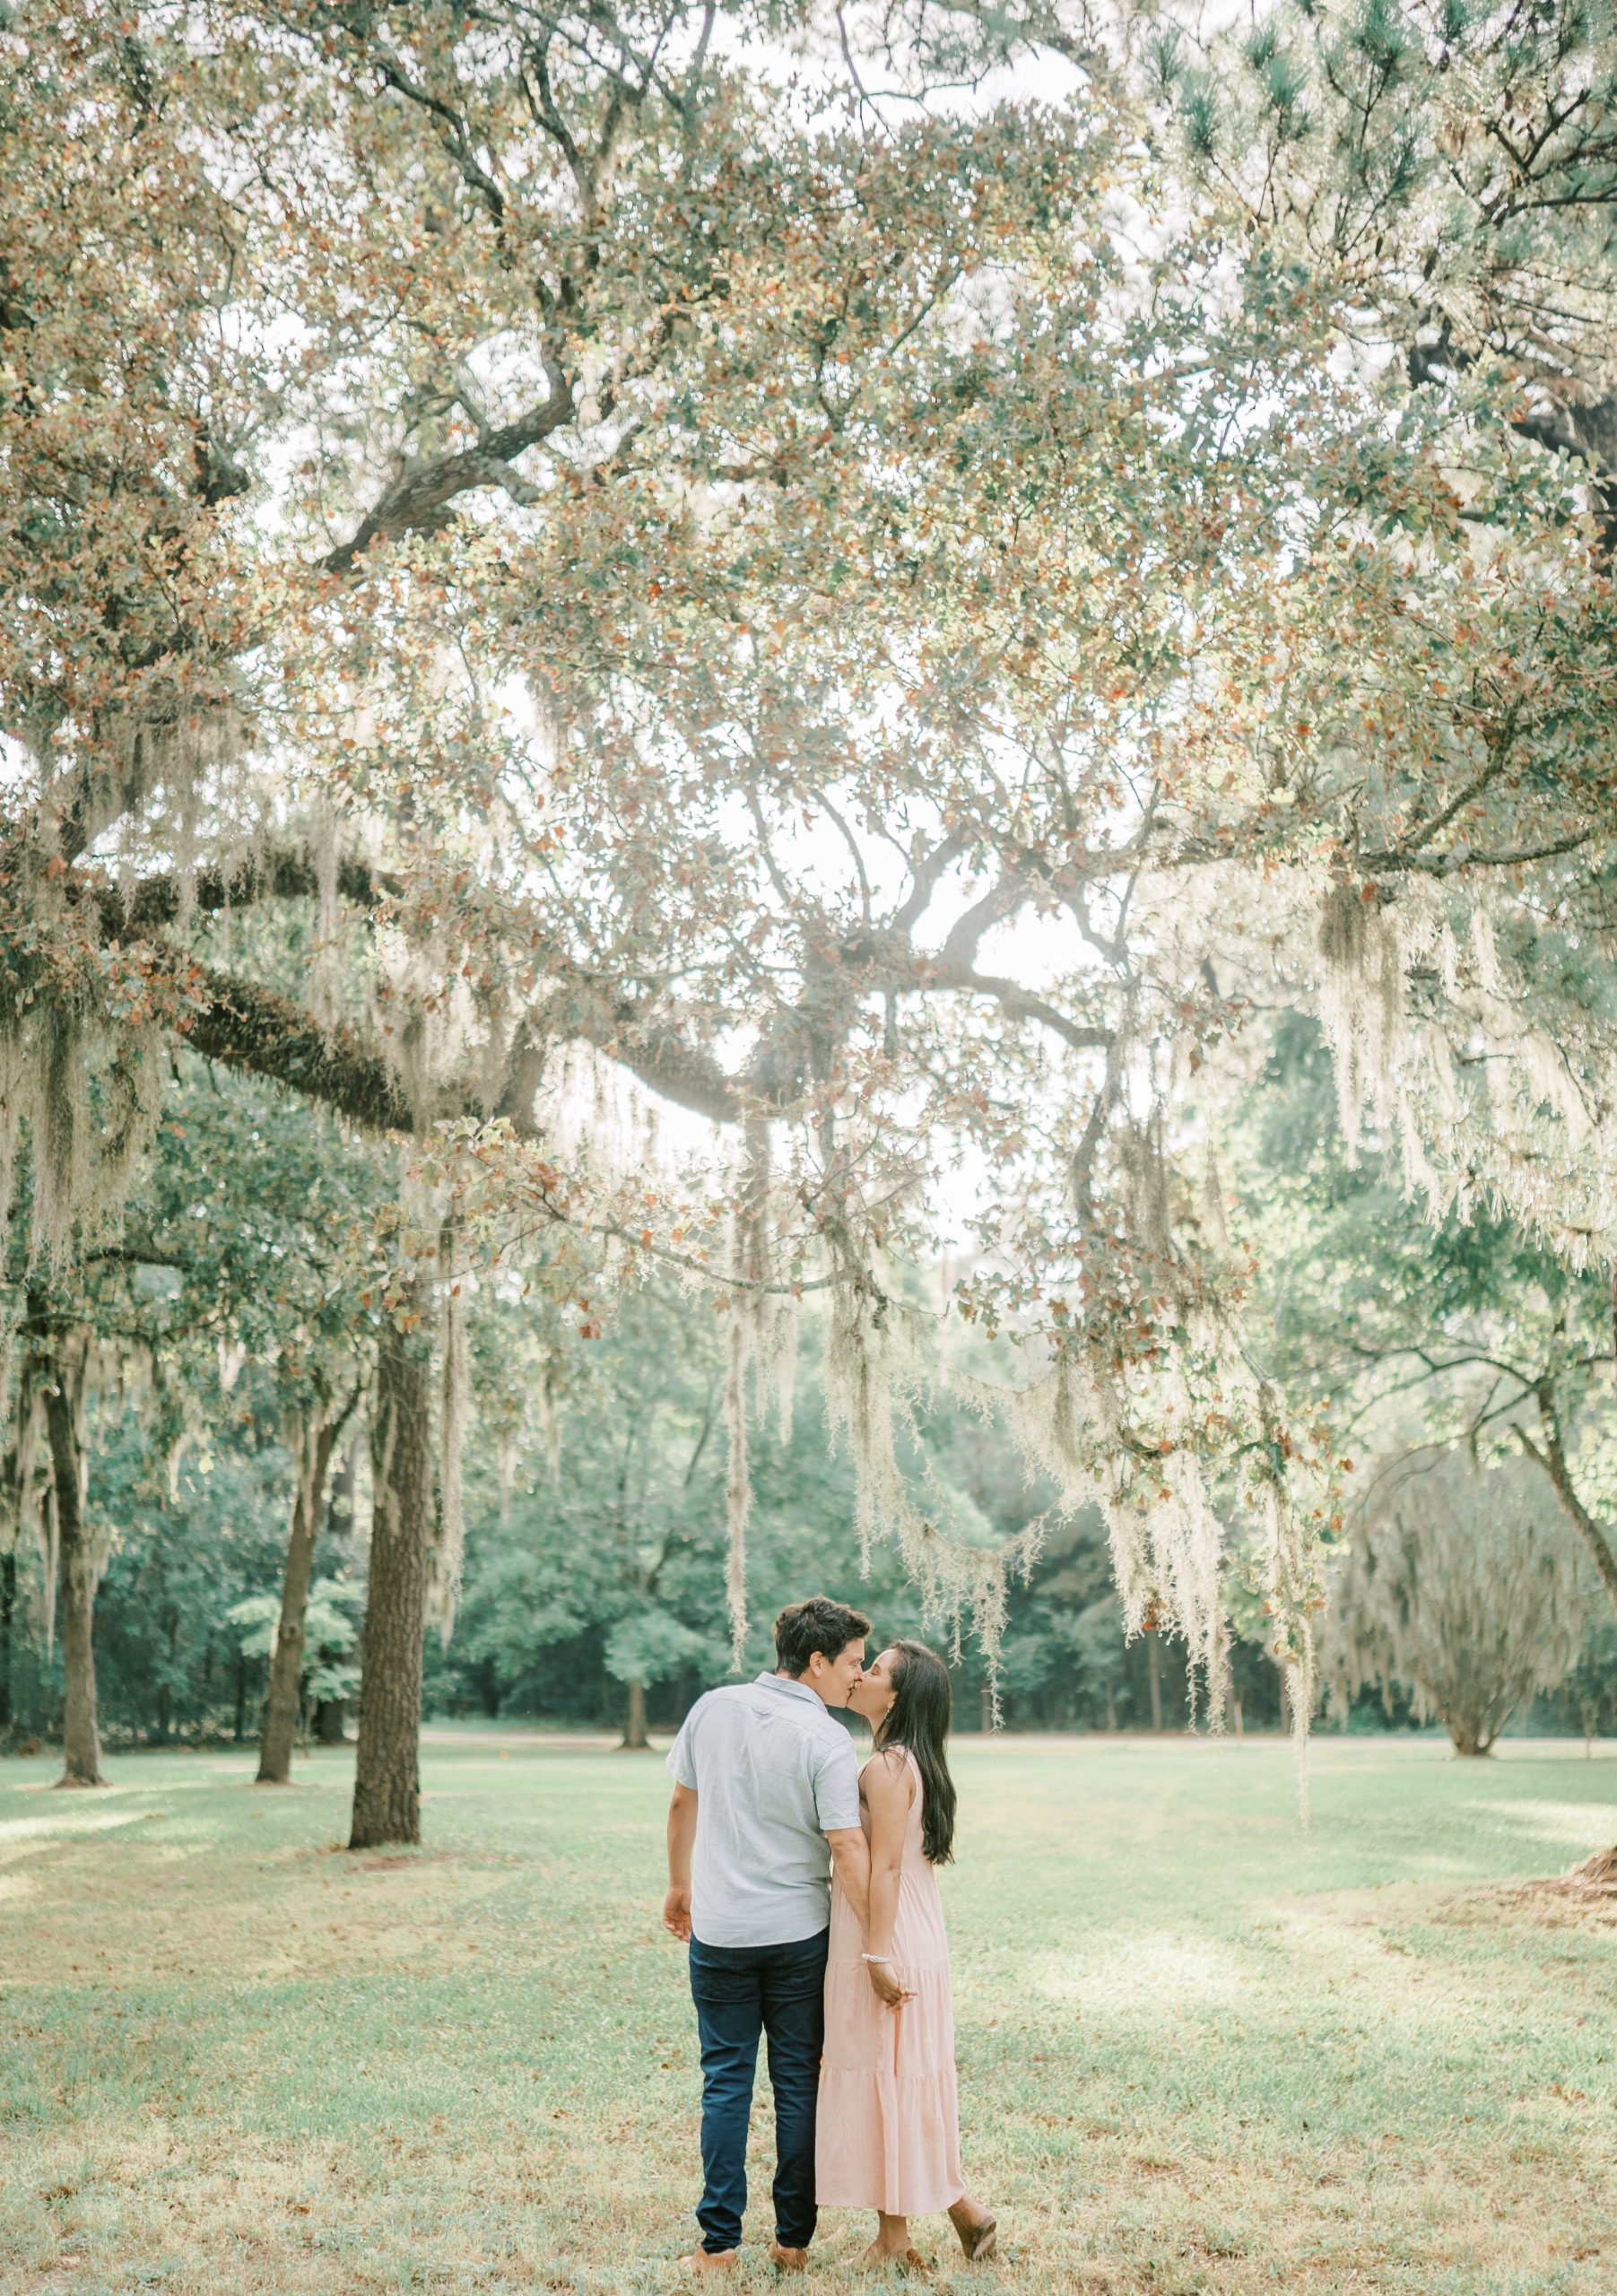 Mossy Tree Engagement Session | Houston Wedding Photographer ...